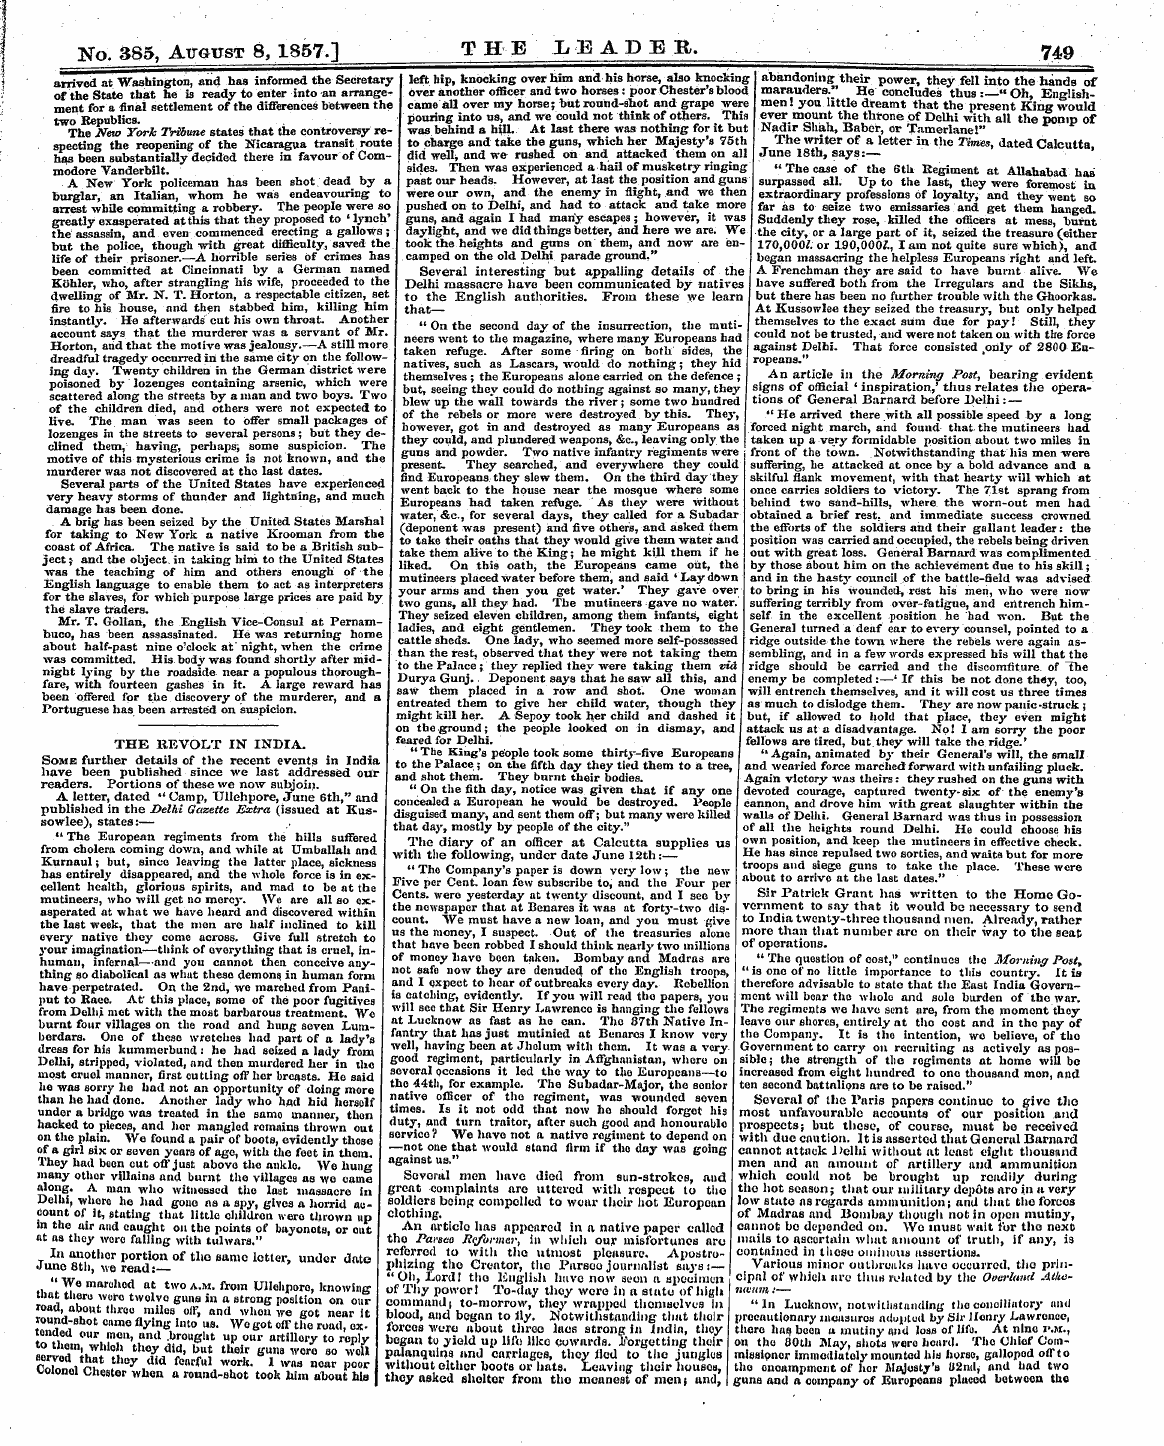 Leader (1850-1860): jS F Y, 2nd edition - Yq. 385, August 8,1857.] T H E X, E A D ...